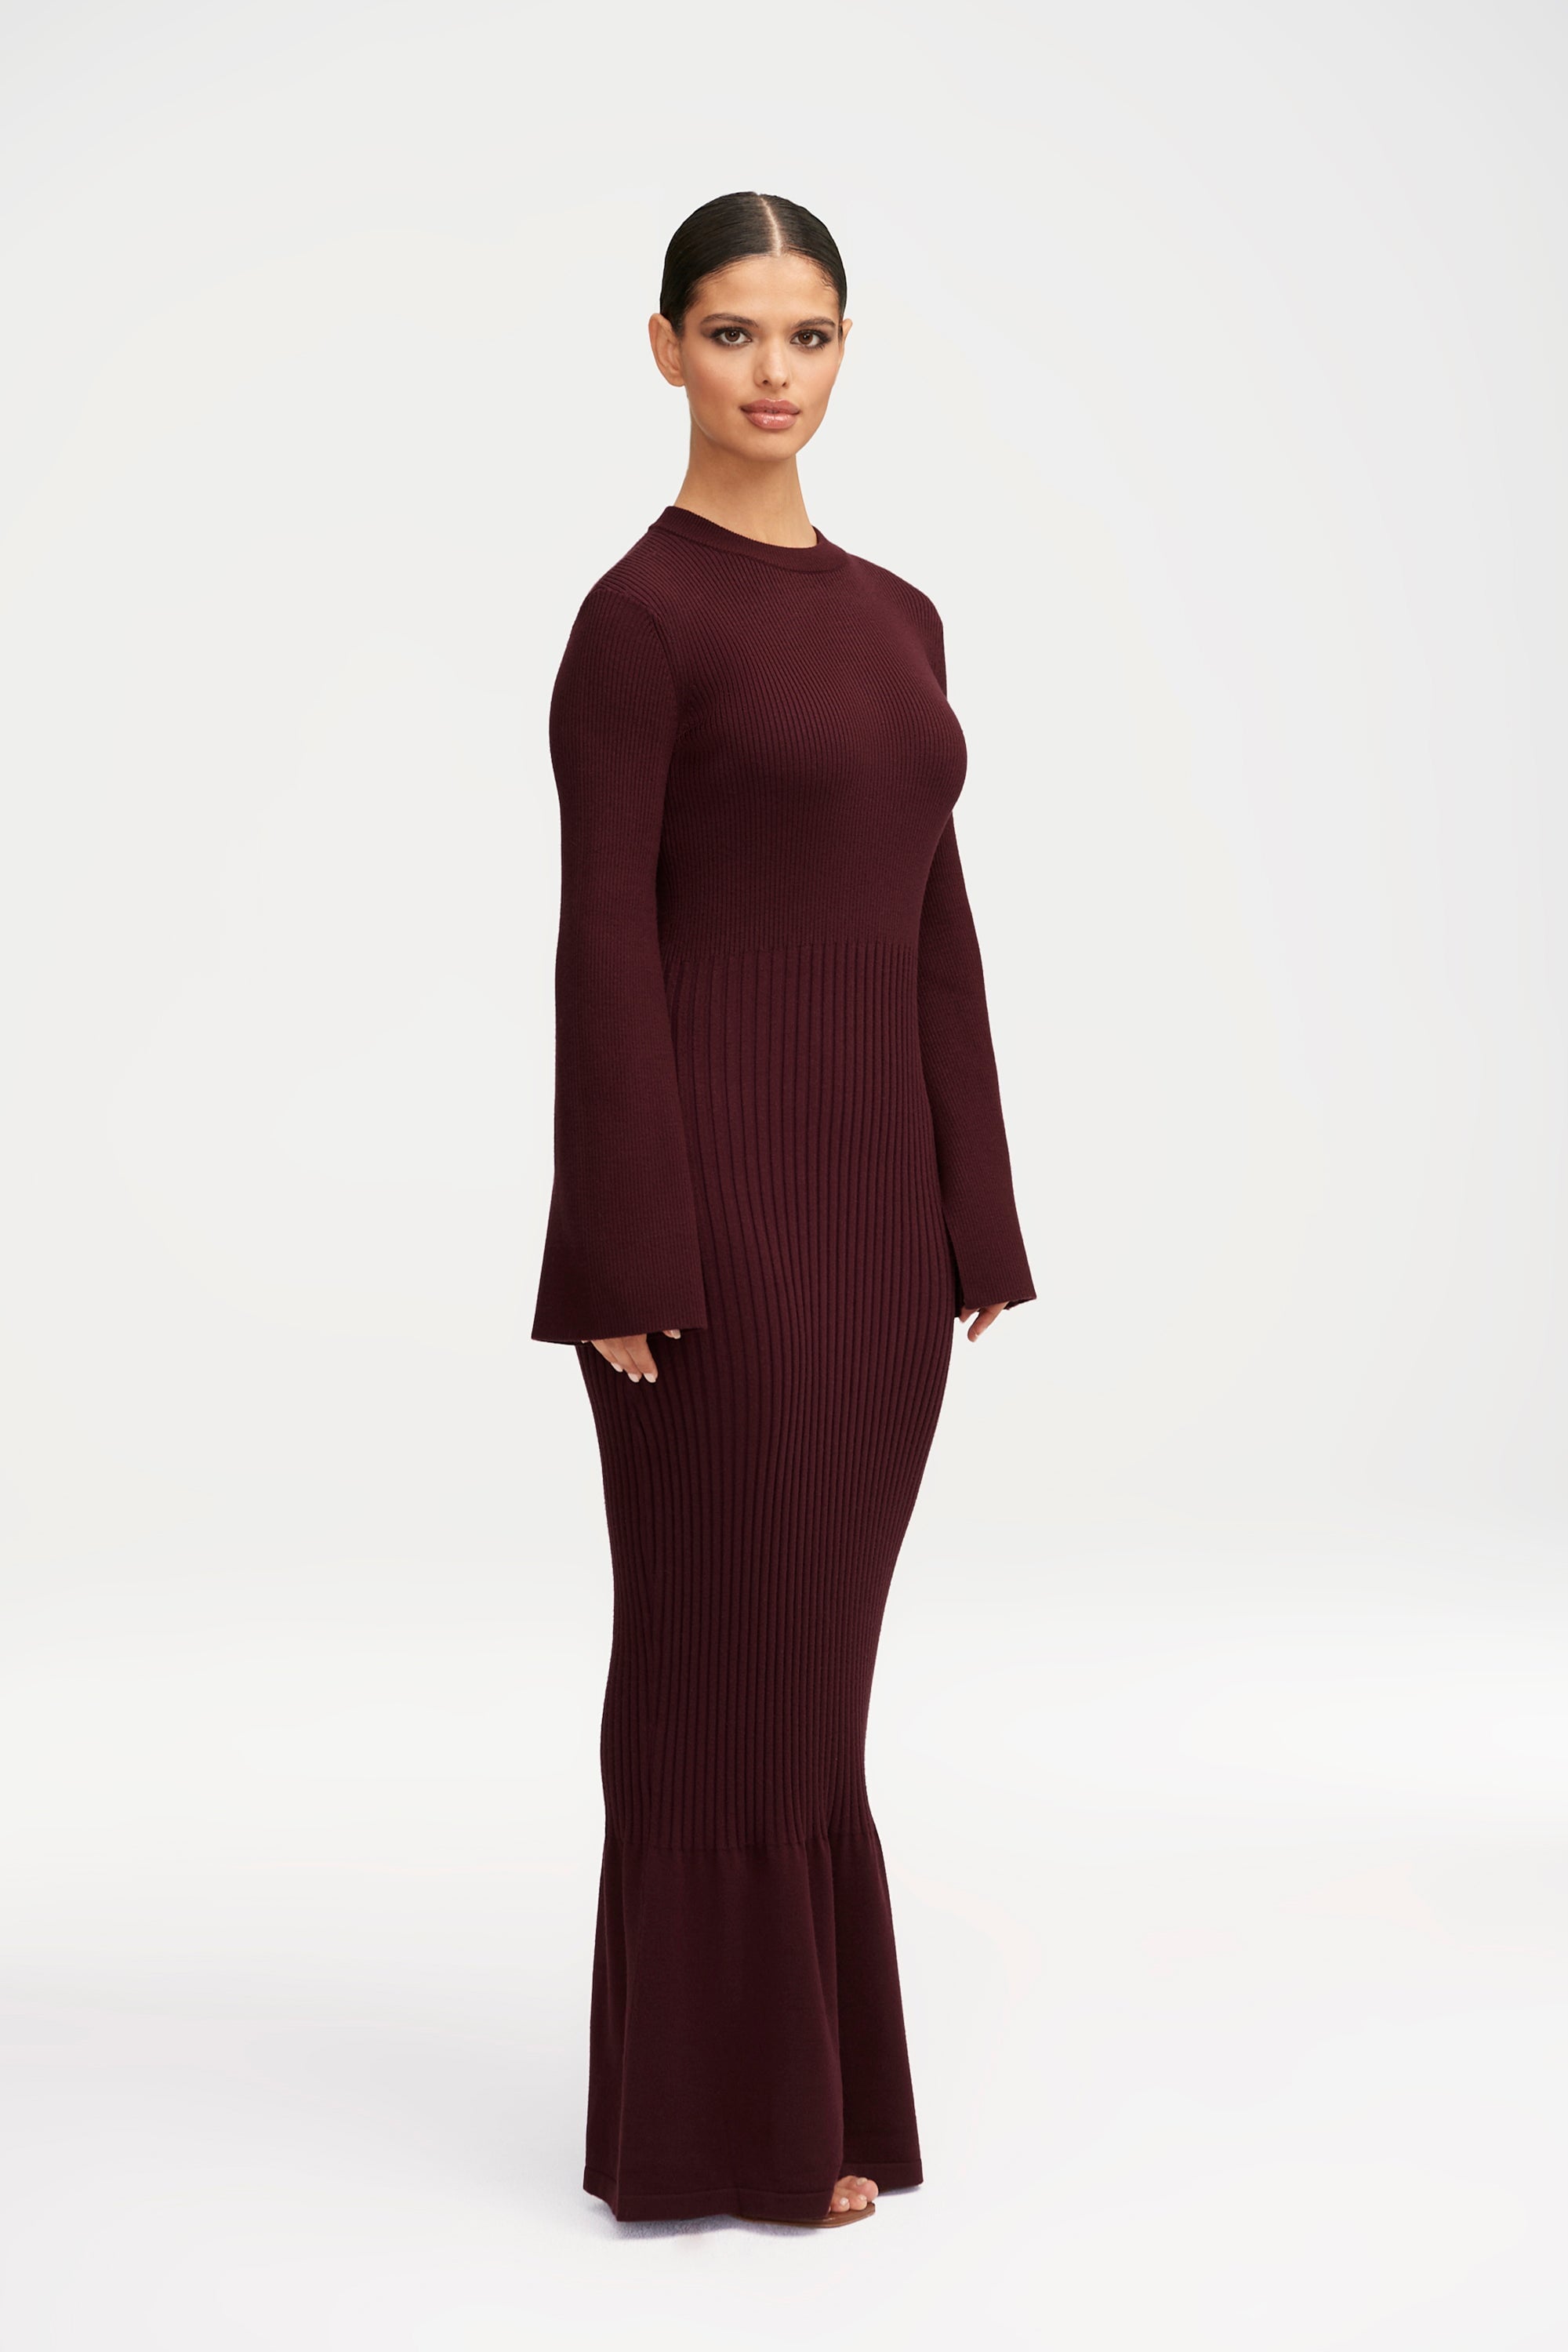 Kourtney Ribbed Knit Maxi Dress - Chocolate Plum Clothing Veiled 